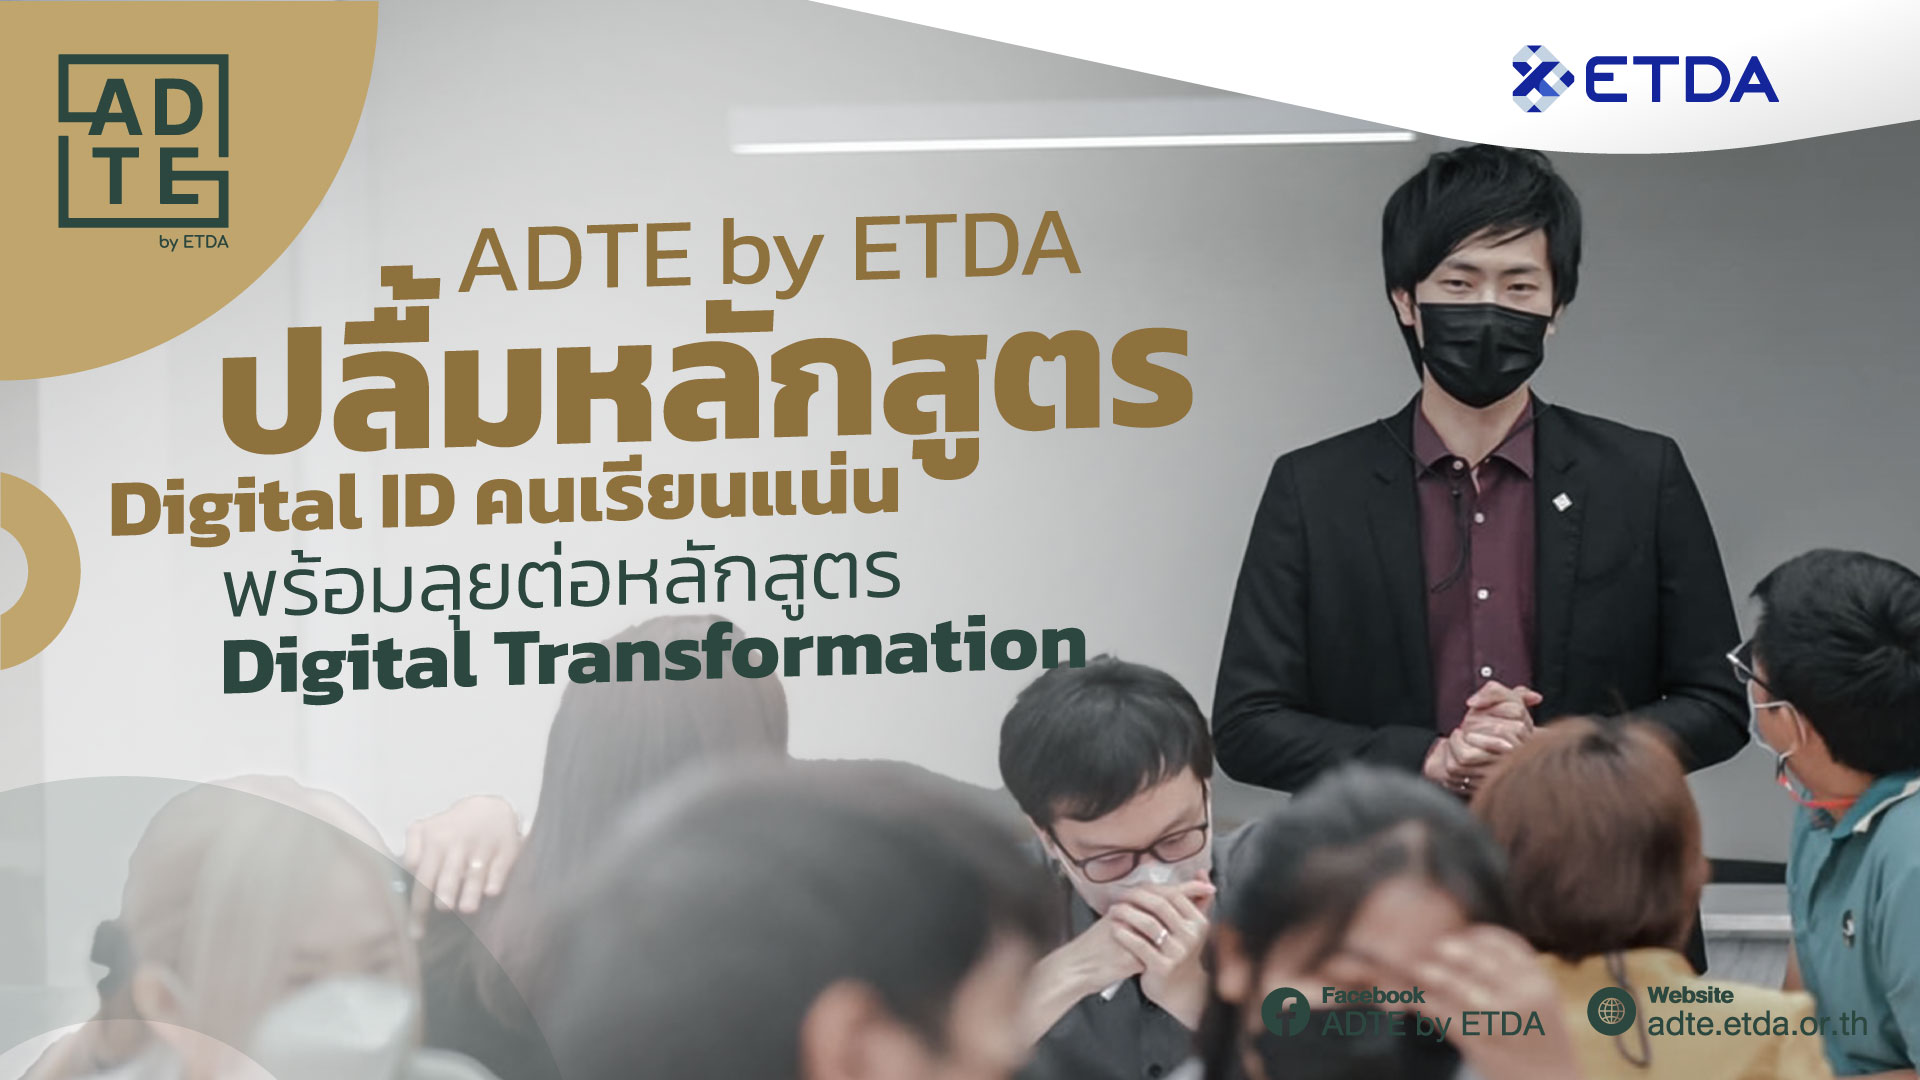 ADTE by ETDA ปลื้มหลักสูตร Digital ID คนเรียนแน่น พร้อมลุยต่อหลักสูตร Digital Transformation (1)